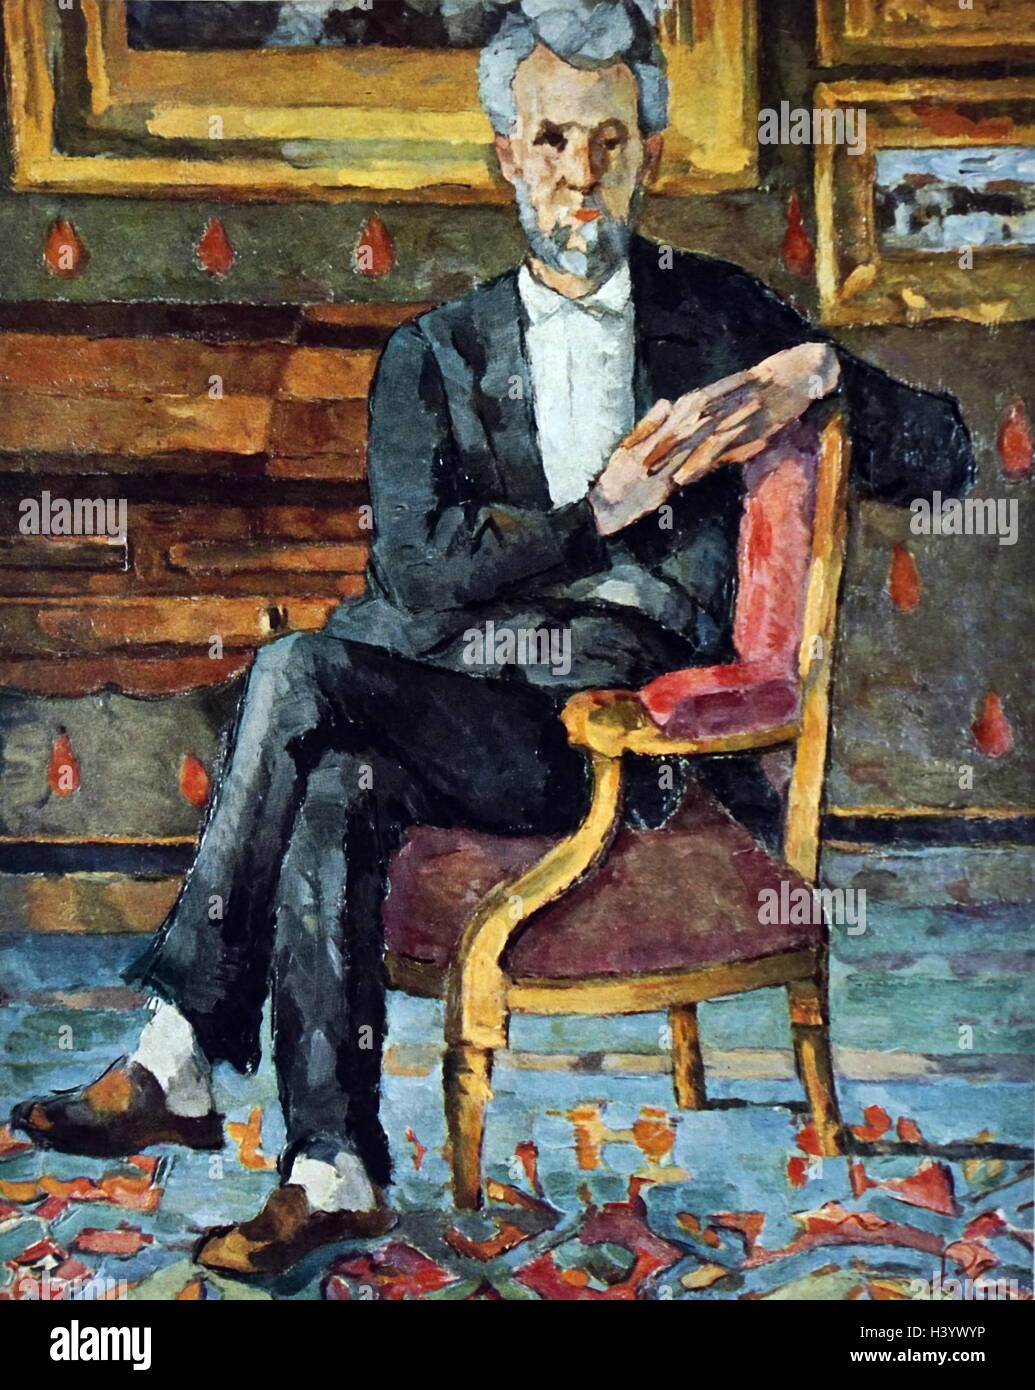 Gemälde mit dem Titel "Chocquet sitzend von Paul Cézanne (1839-1906), ein französischer Künstler und post-impressionistischen Malers". Vom 19. Jahrhundert Stockfoto